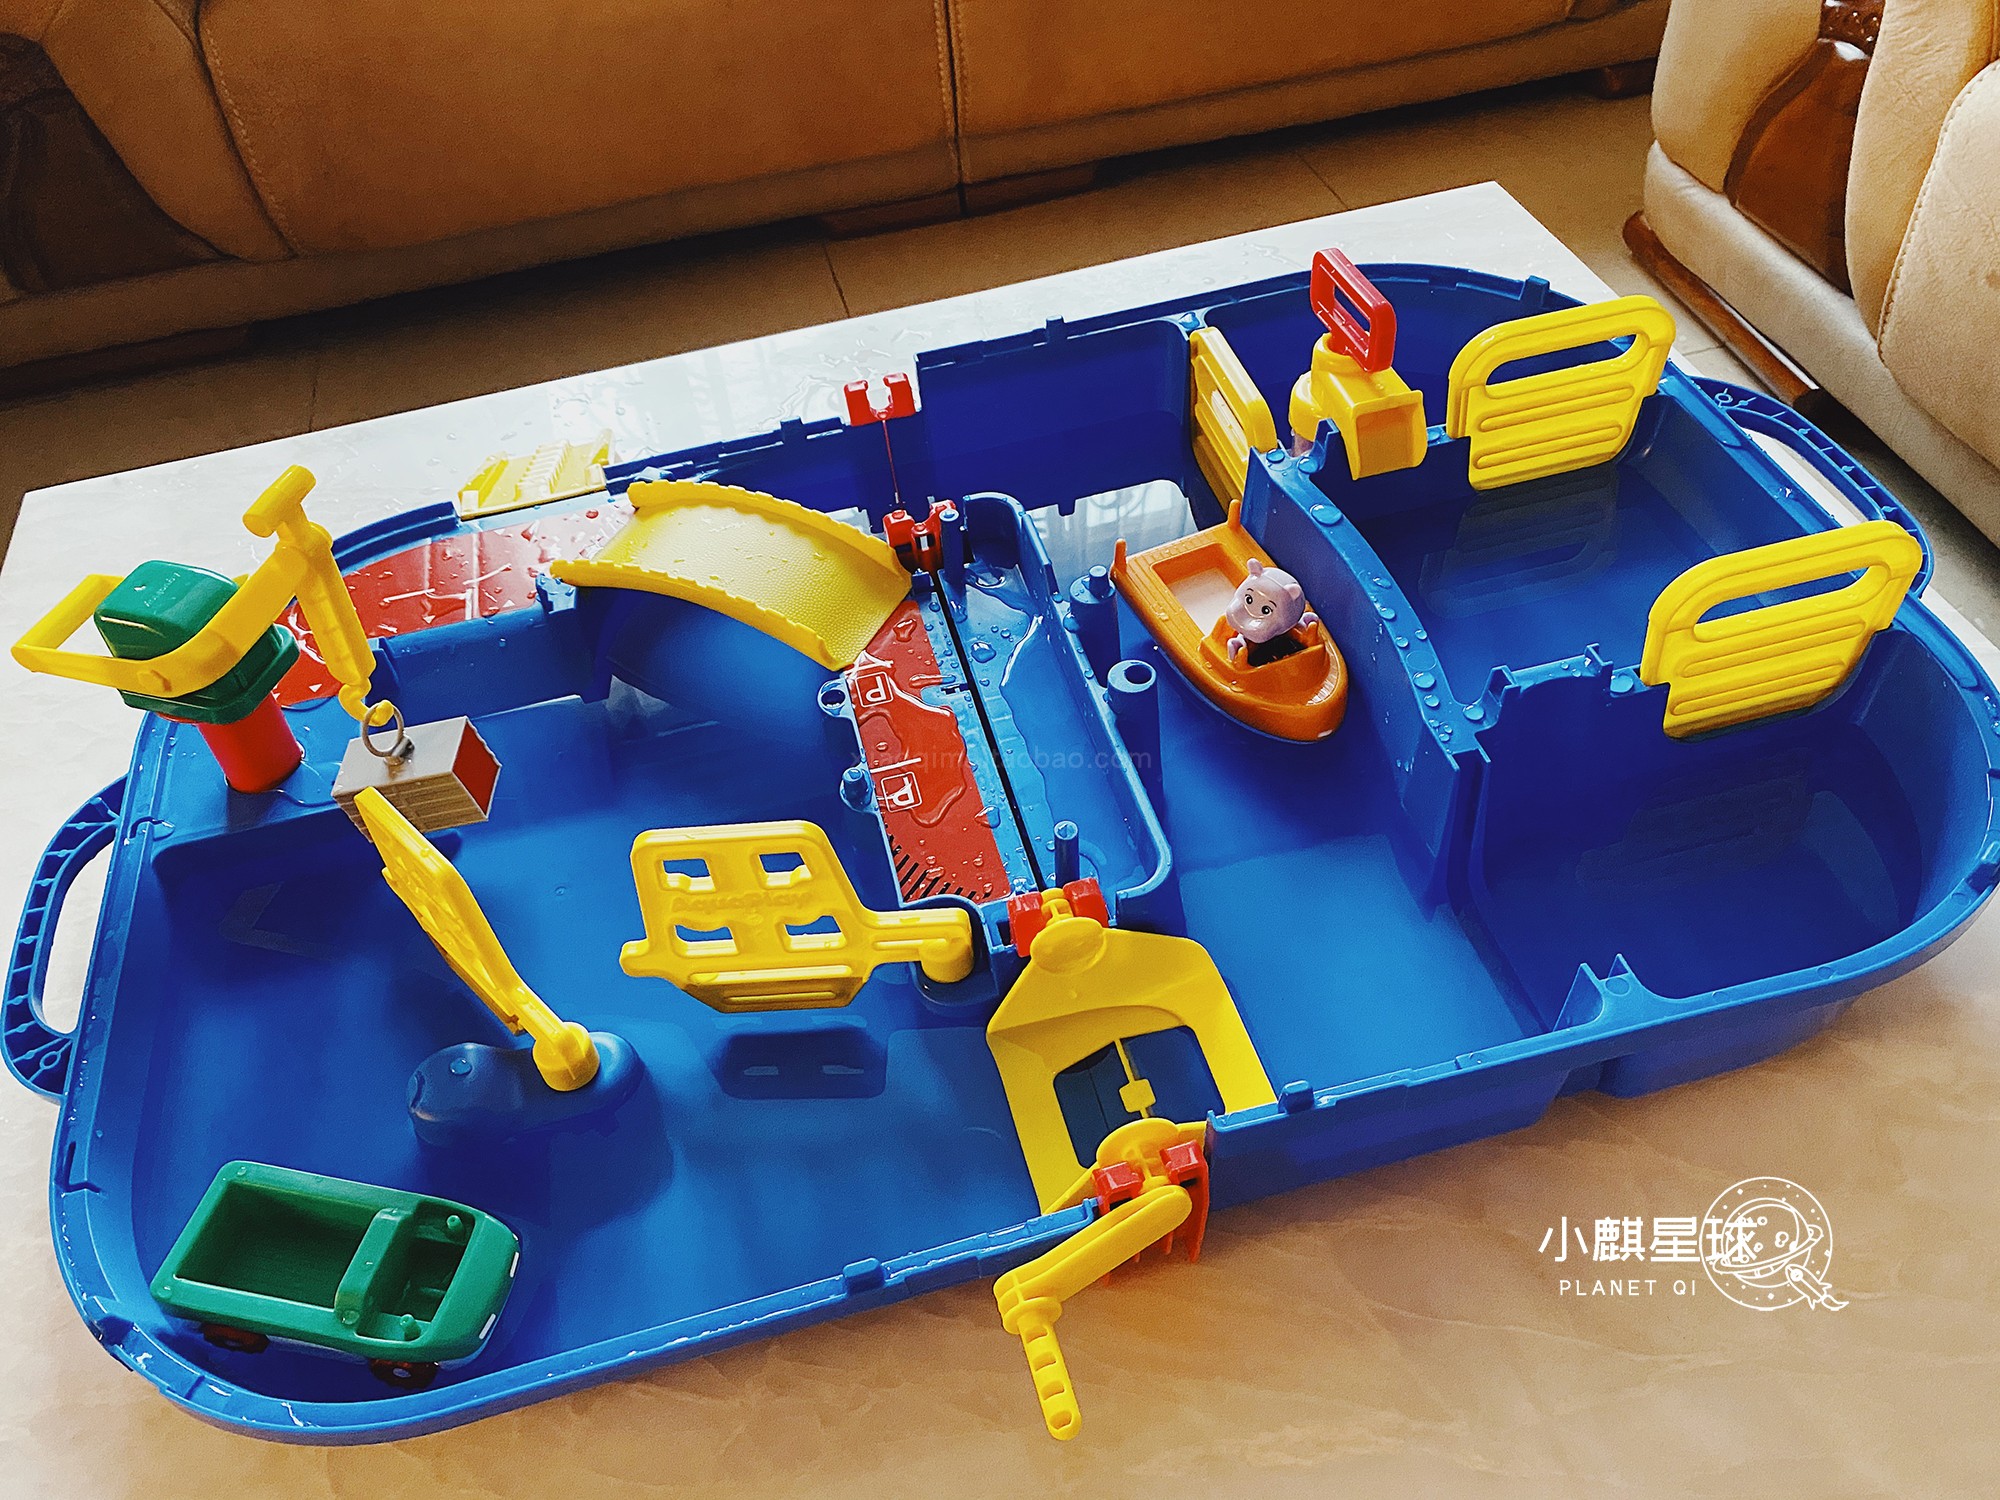 夏日来玩水~德国进口Aquaplay模拟河道便携船闸戏水玩具套装